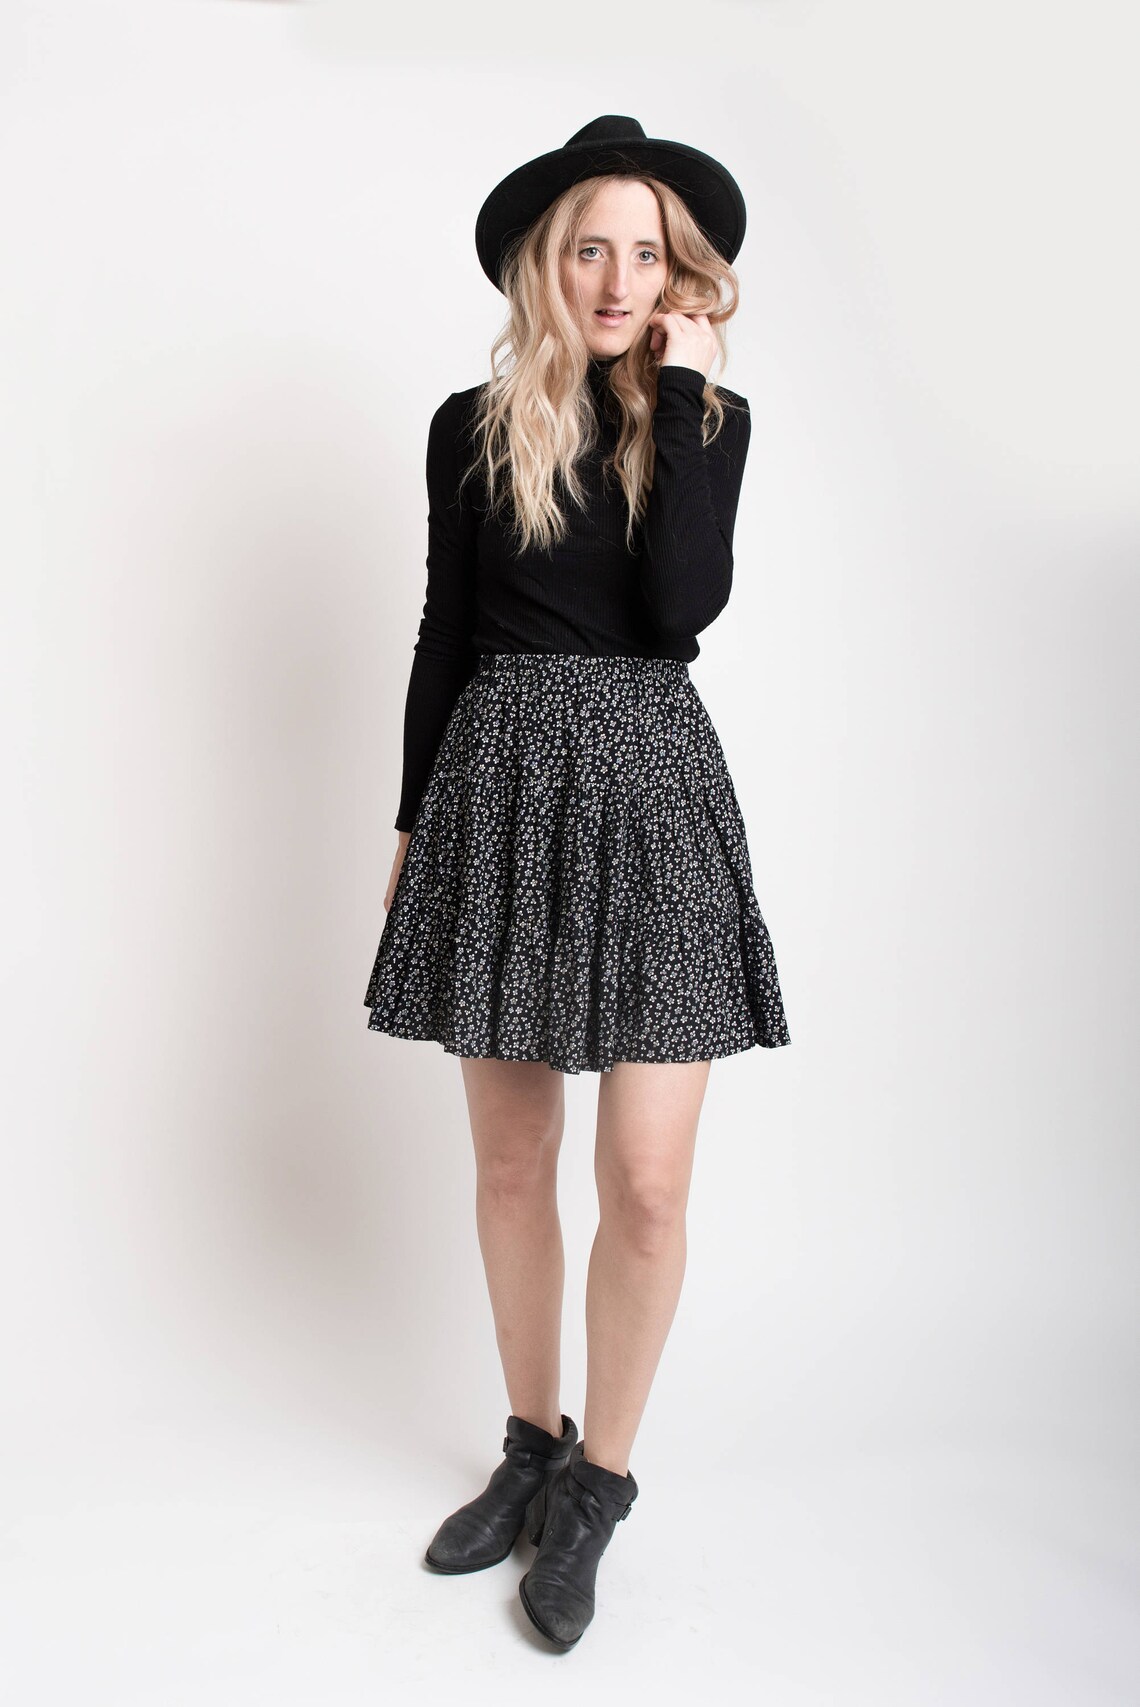 Rad Black and White Floral Boho Skirt / bohemian ruffled skirt | Etsy